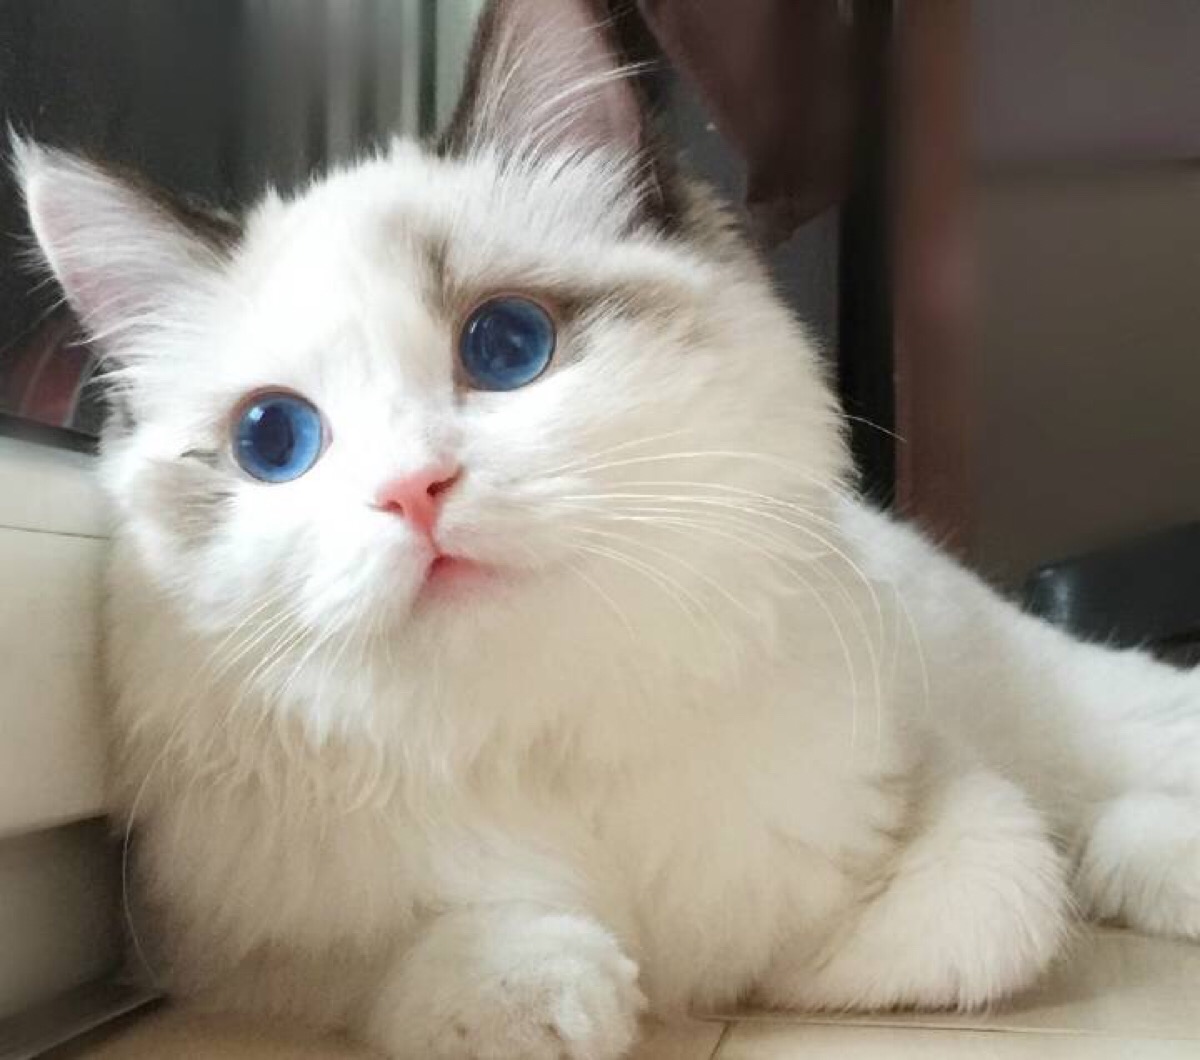 蓝眼猫咪头像图片